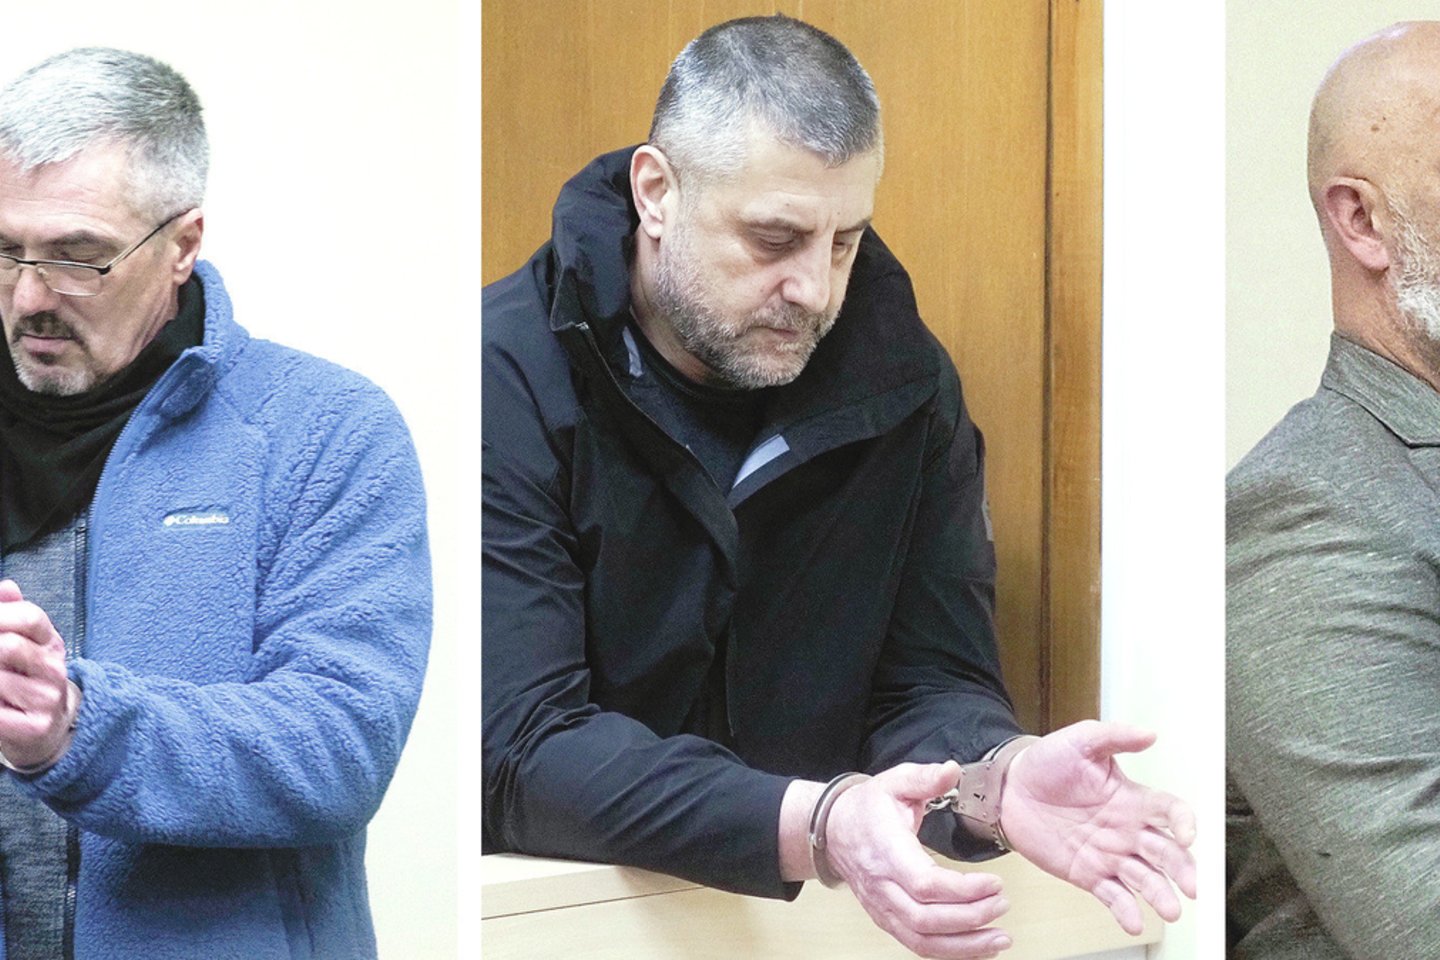 (Iš kairės) G.Viknius, E.Norbajevas ir K.Kaminskis buvo sulaikyti sodyboje gaminantys narkotines medžiagas.